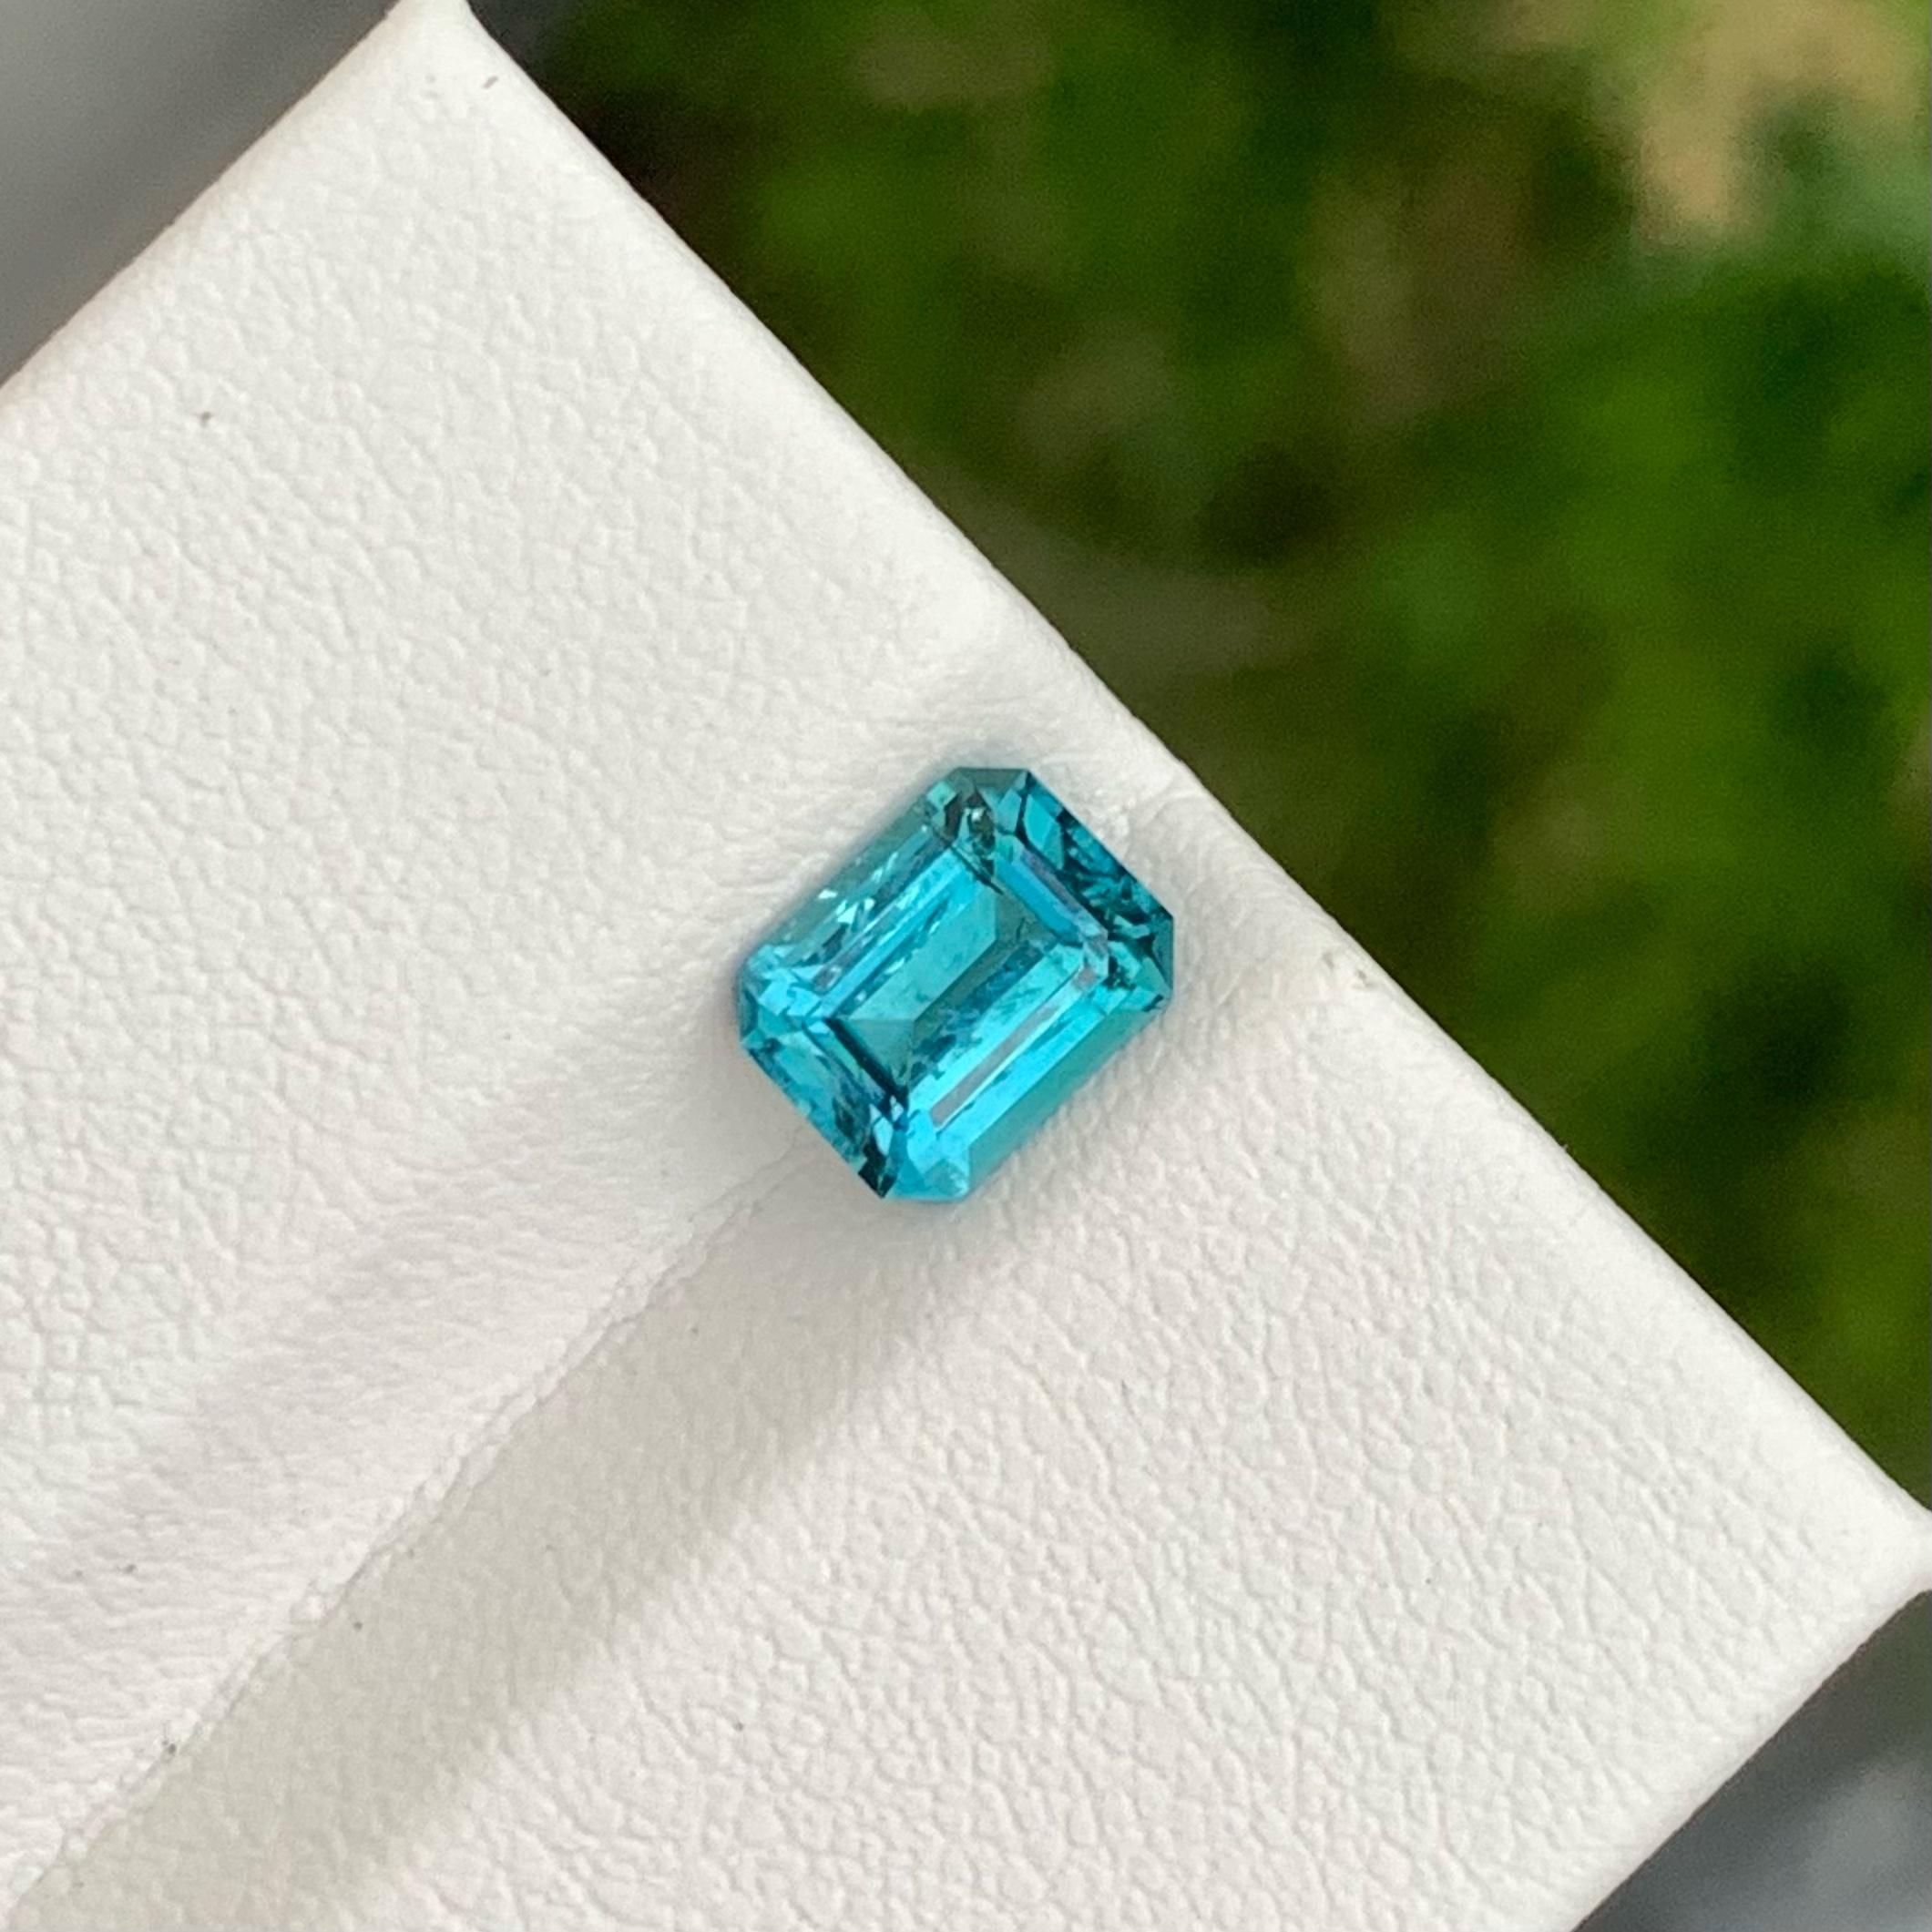 Poids 1,65 carats 
Dimensions 7,8 x 6,1 x 4,4 mm
Traitement Aucun 
Origine Afghanistan 
Clarté SI (légèrement incluse)
Forme Octogone 
Émeraude taillée 


La tourmaline bleue Tiffany est une pierre précieuse étonnante connue pour sa belle couleur